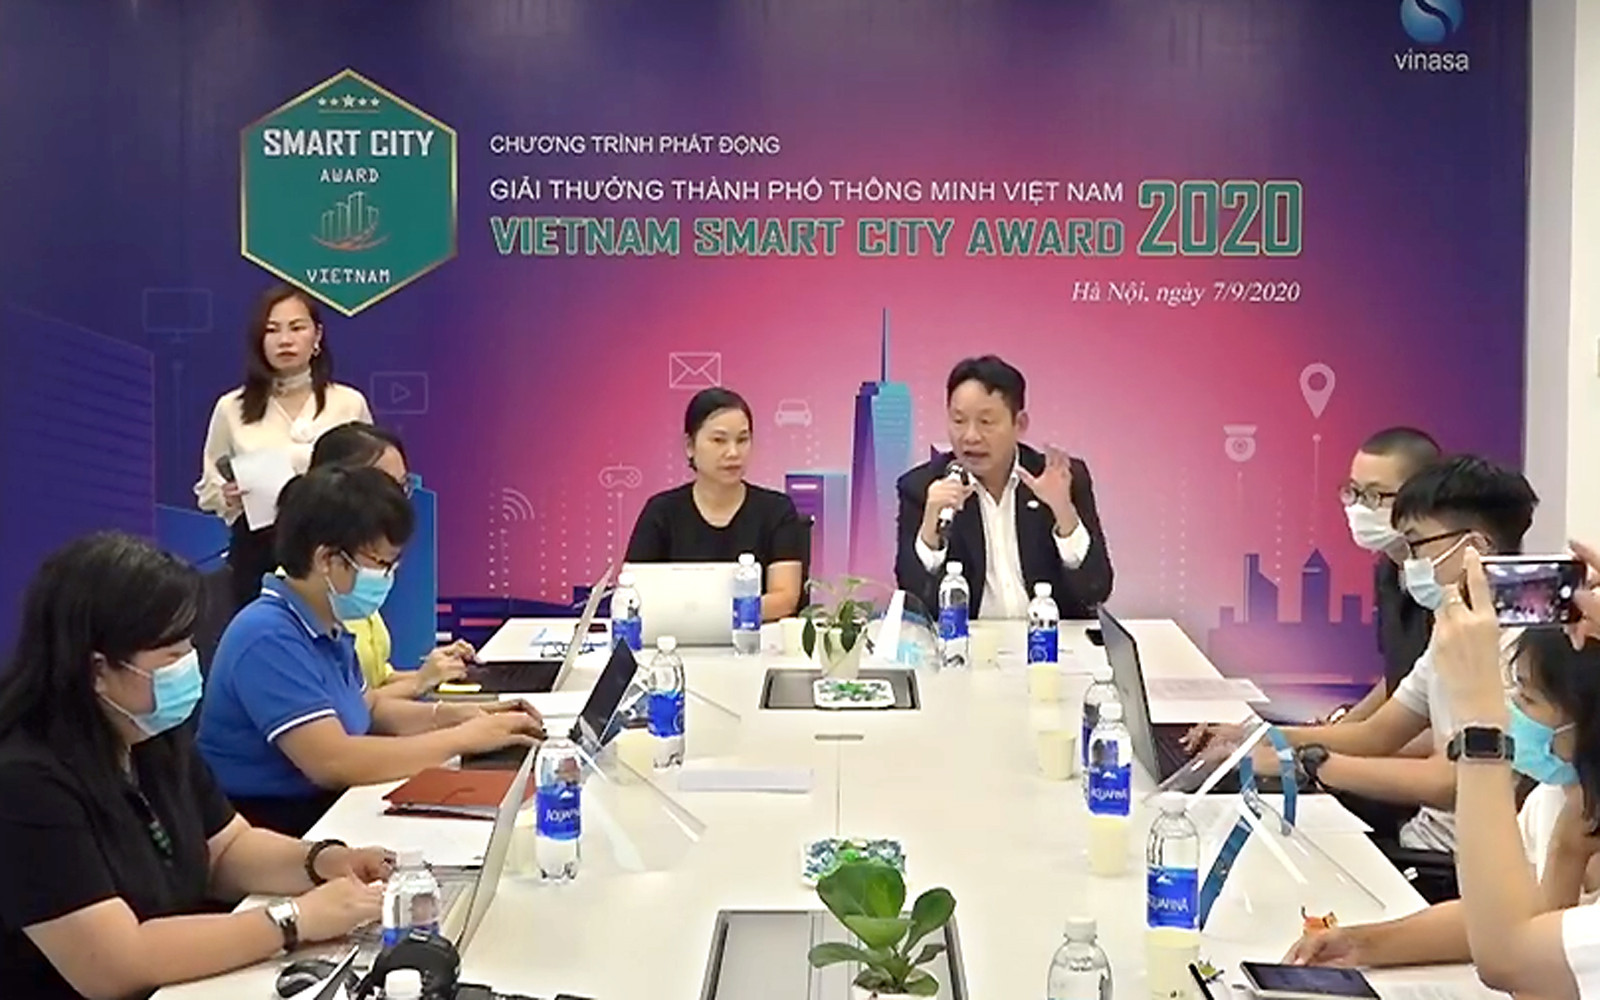 Giải thưởng Thành phố Thông minh Việt Nam 2020 góp phần thúc đẩy chuyển đổi số khu vực đô thị - Ảnh 1.